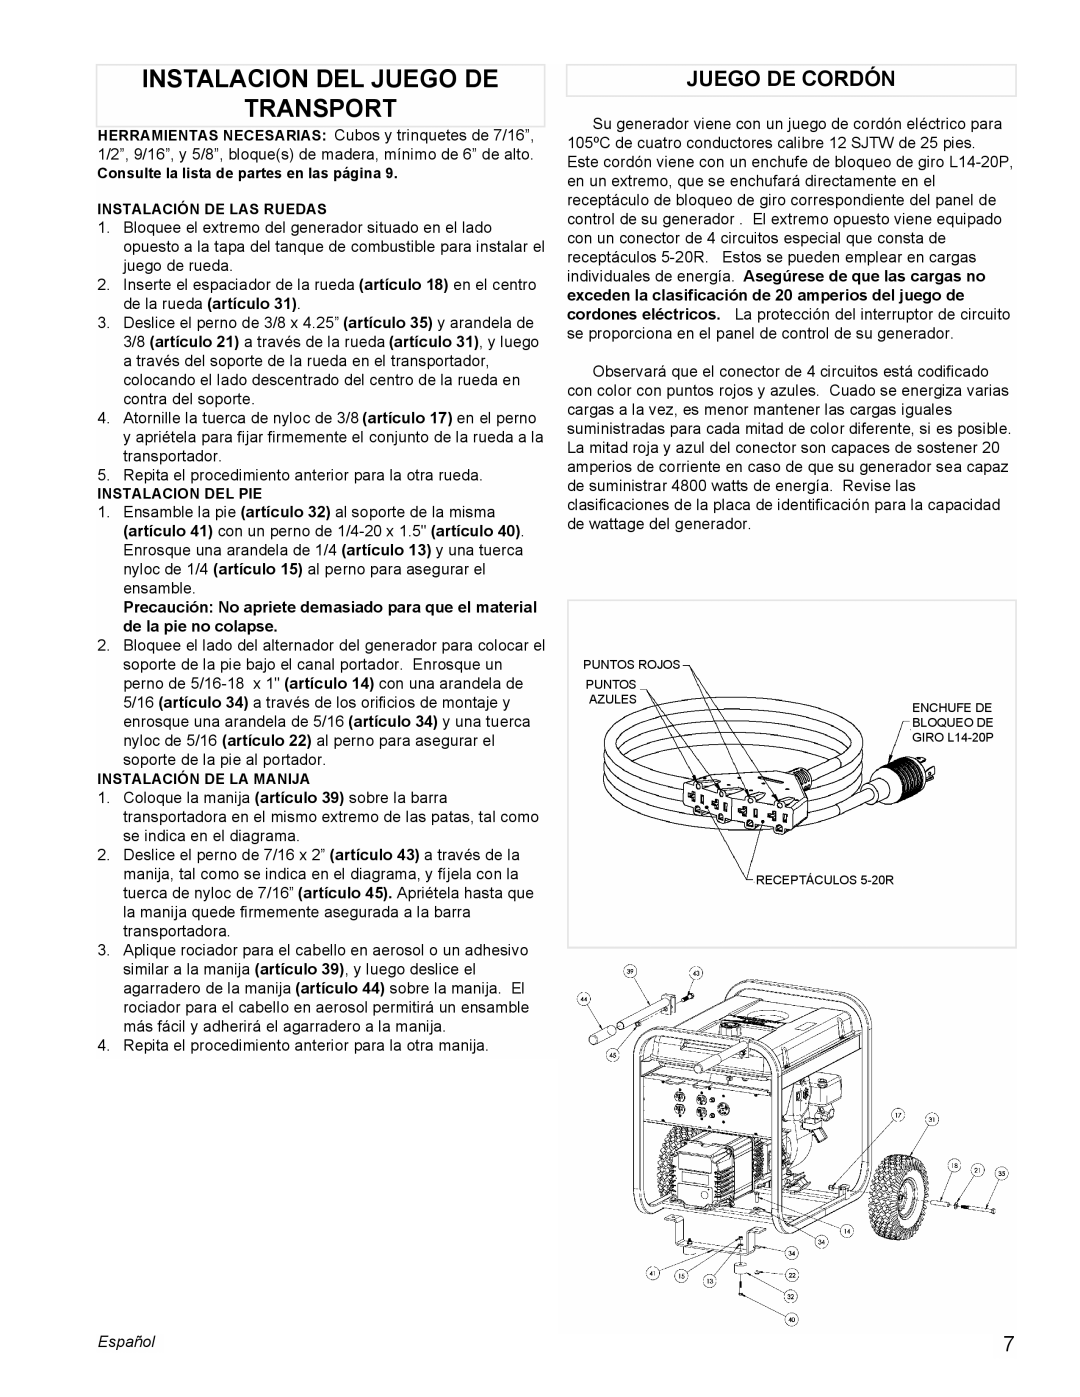 Powermate PL0525501 manual Instalacion Del Juego De Transport, Juego De Cordón, Español 